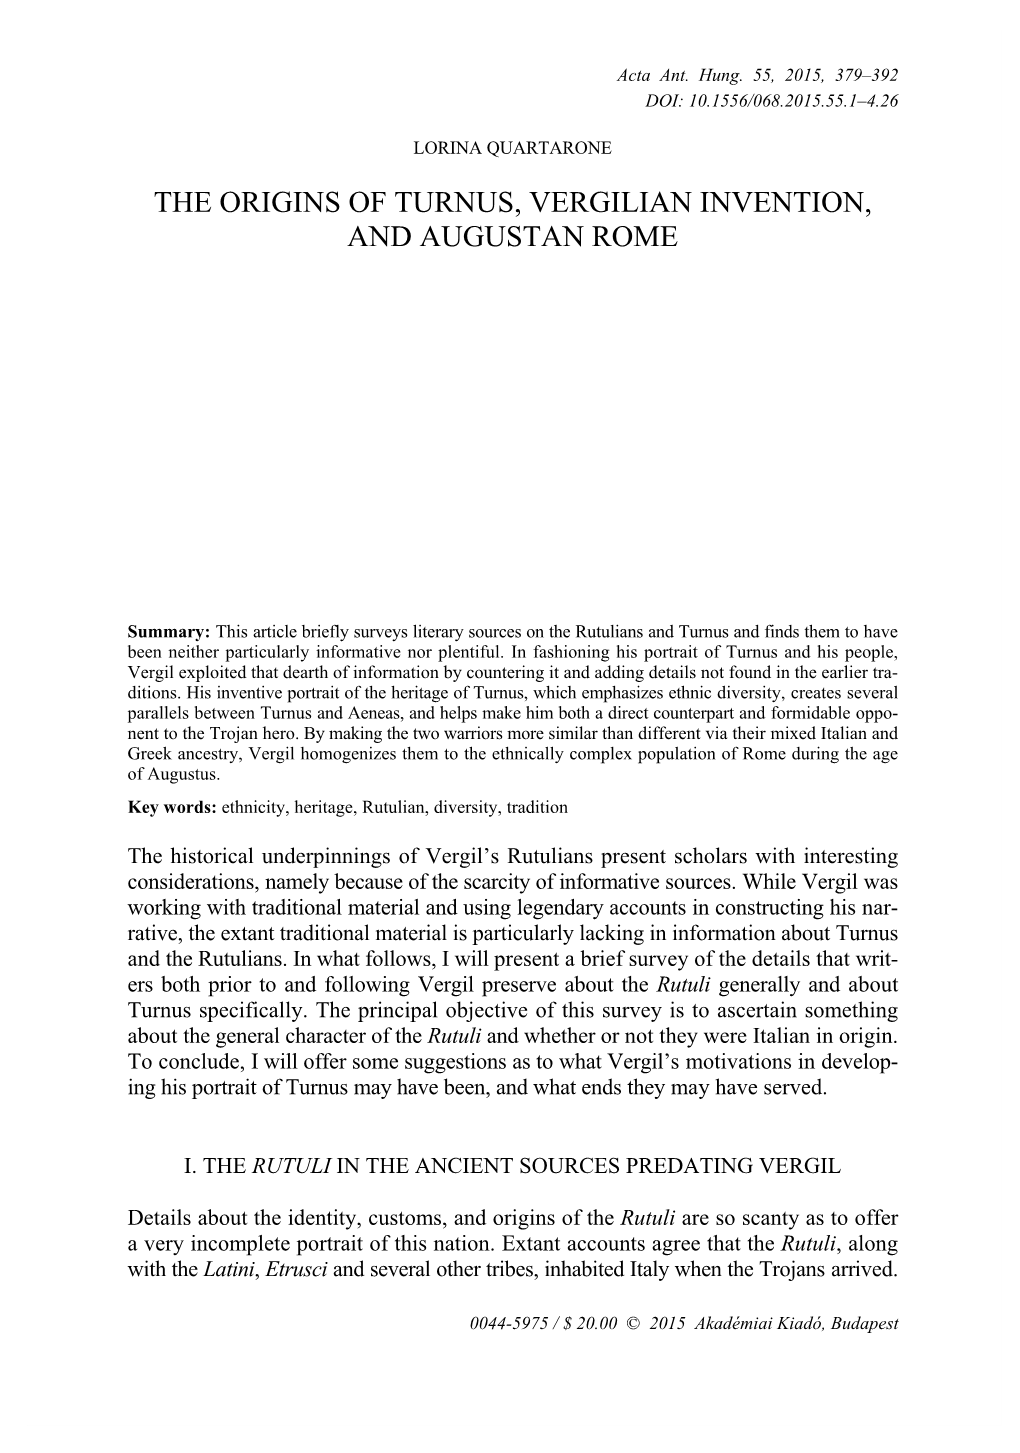 The Origins of Turnus, Vergilian Invention, and Augustan Rome